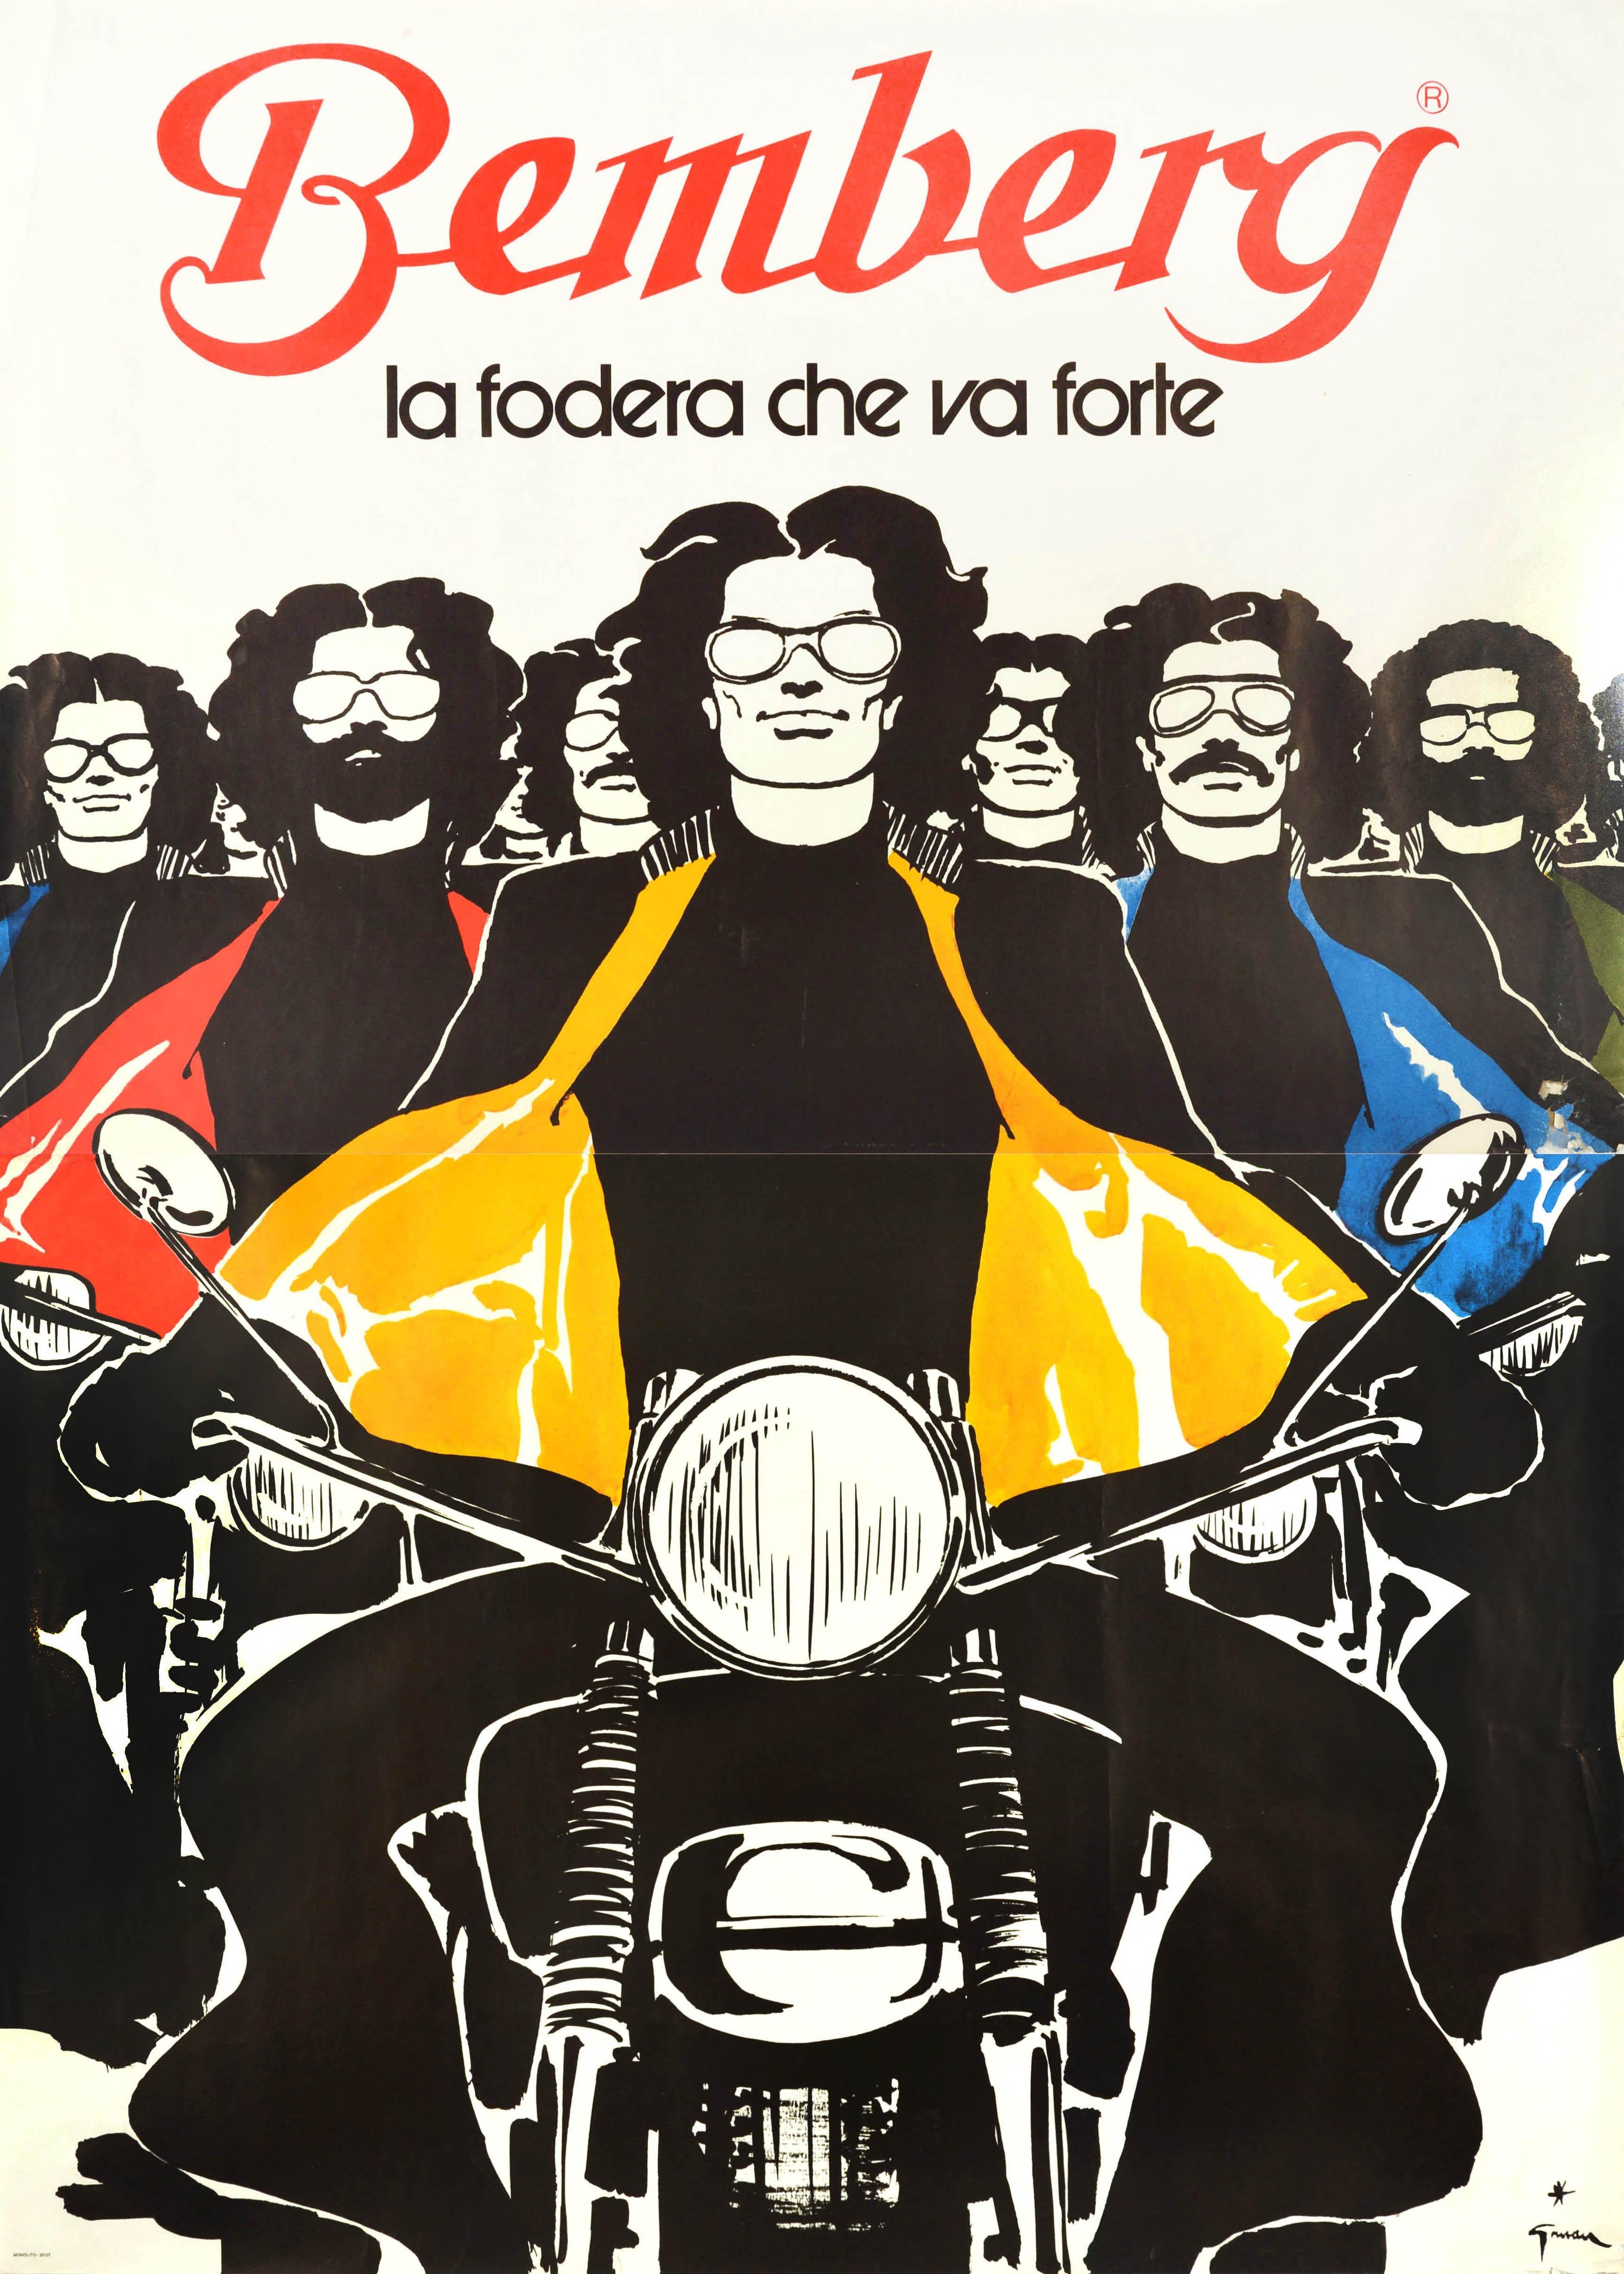 René Gruau Print - Original Vintage Fashion Advertising Poster Bemberg Motorcycle Rene Gruau Design